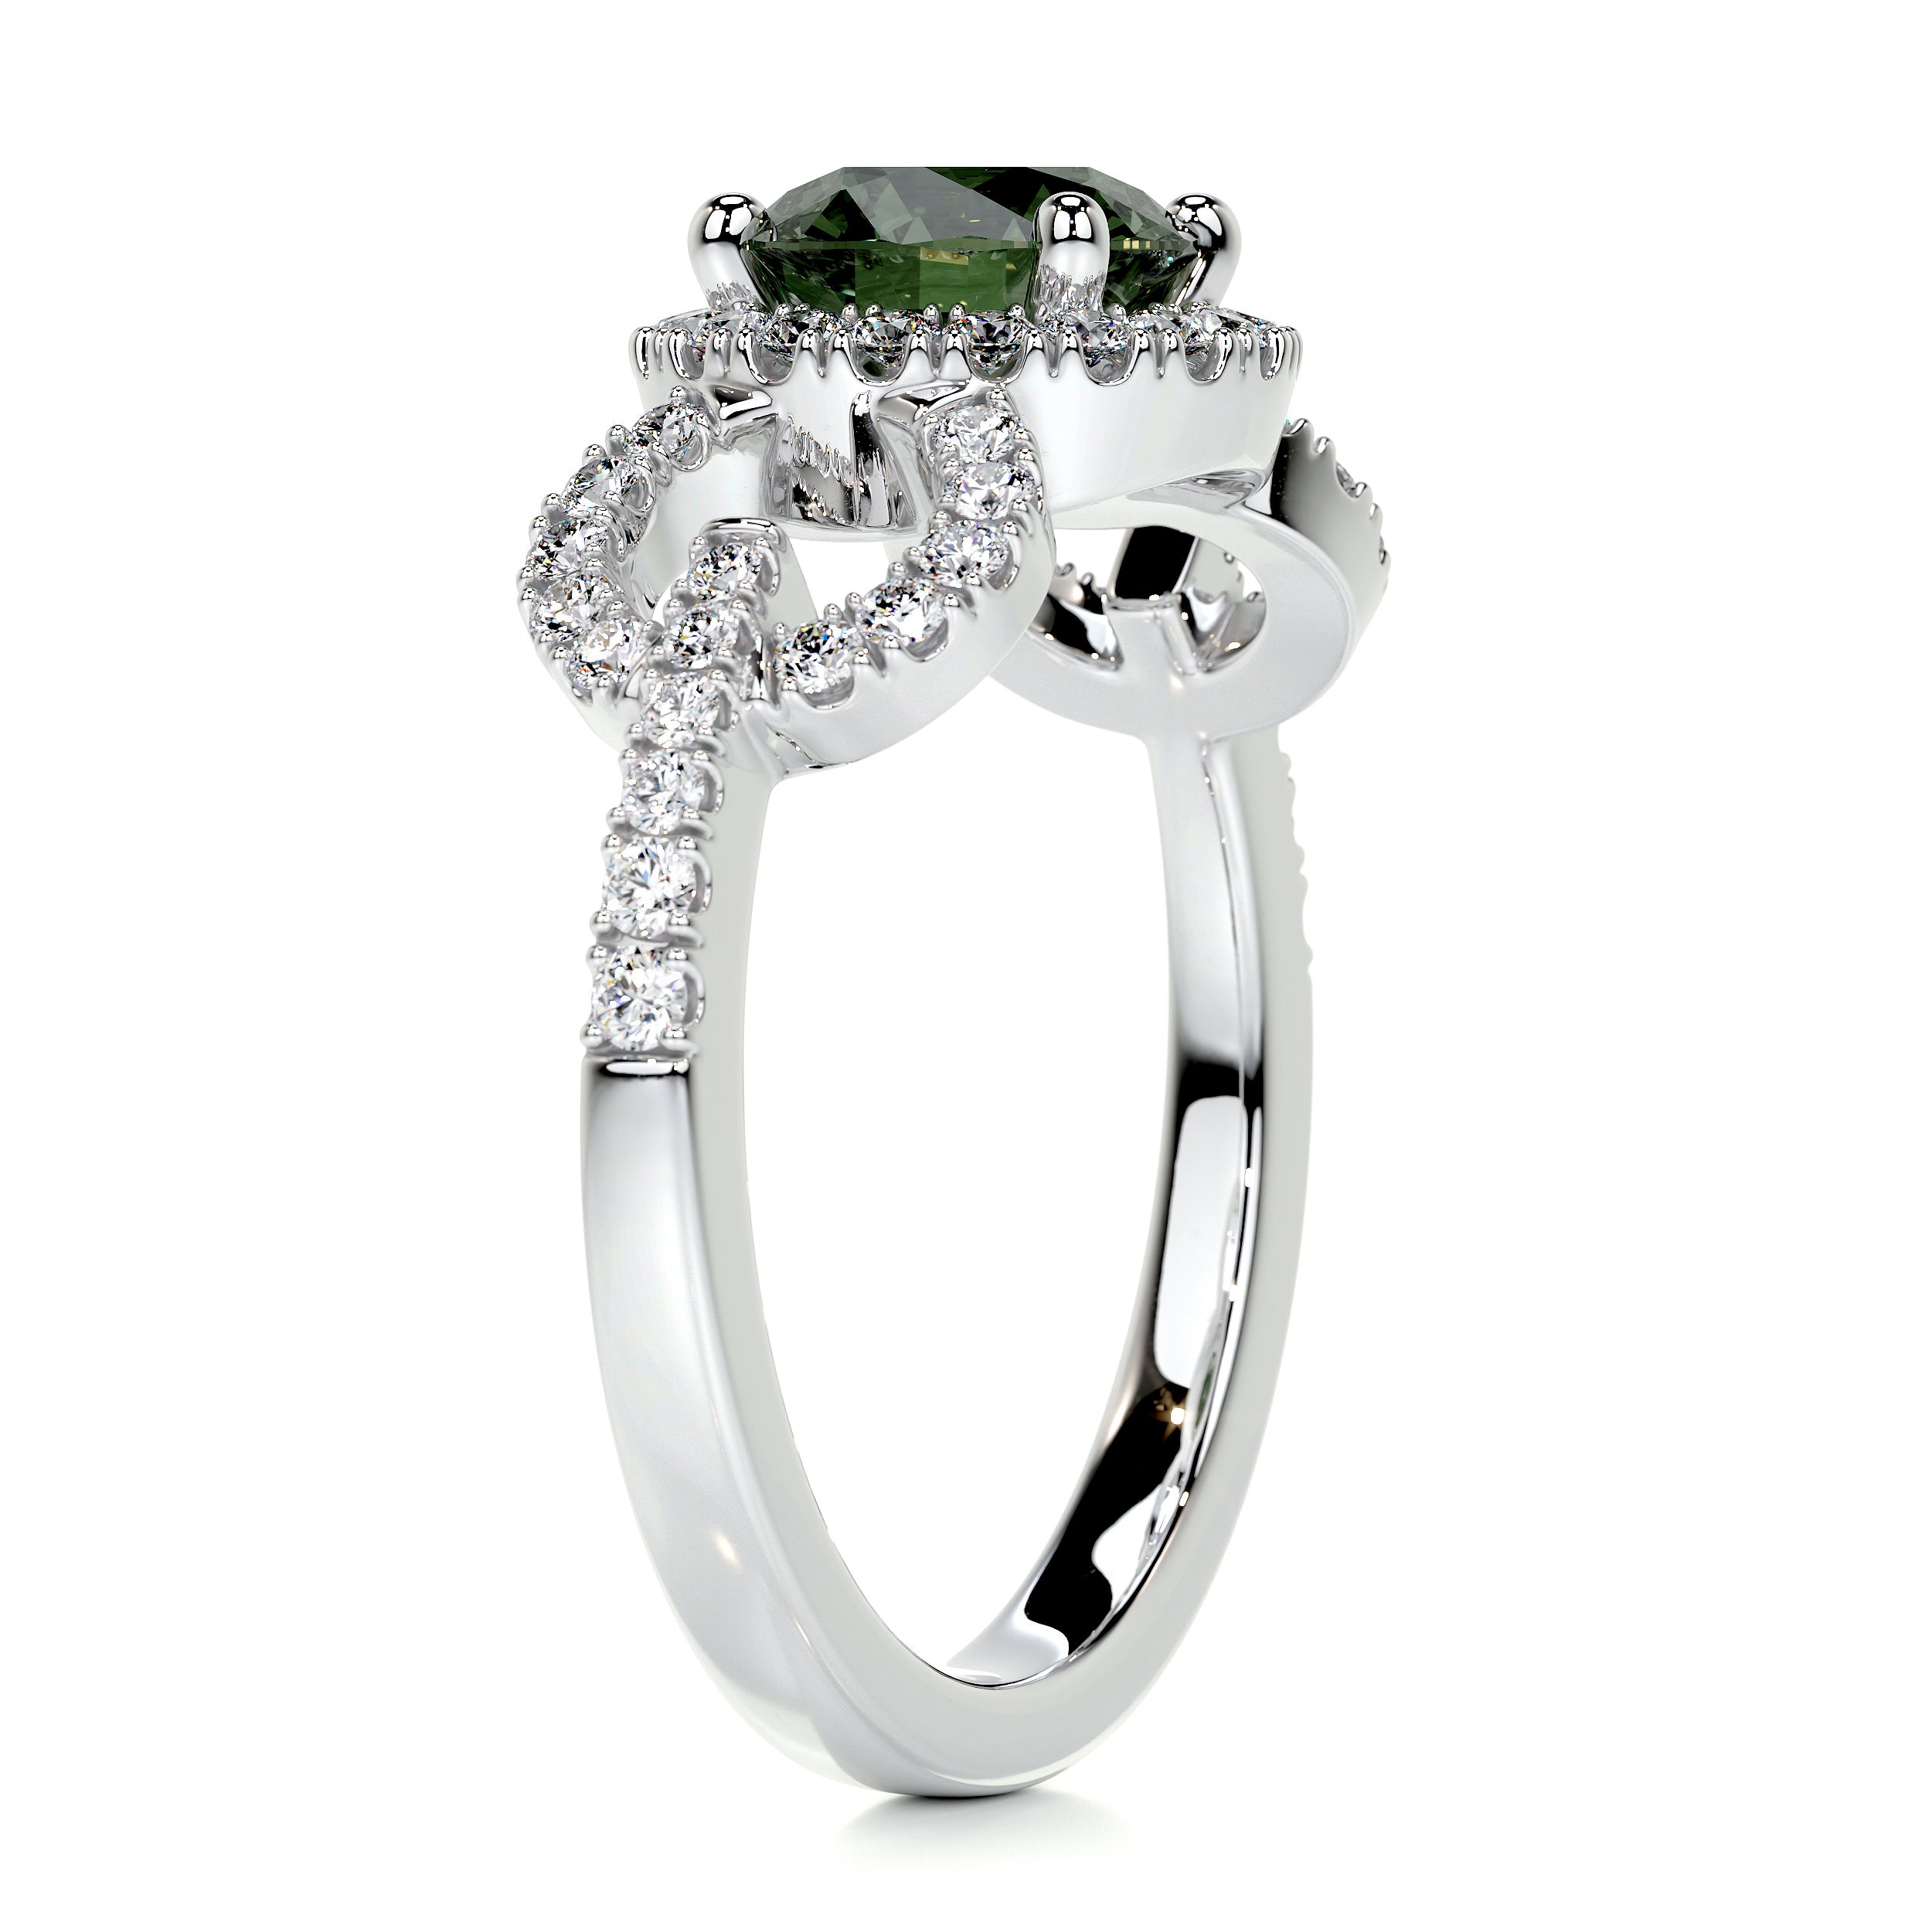 Elize Gemstone & Diamonds Ring   (1.25 Carat) -Platinum